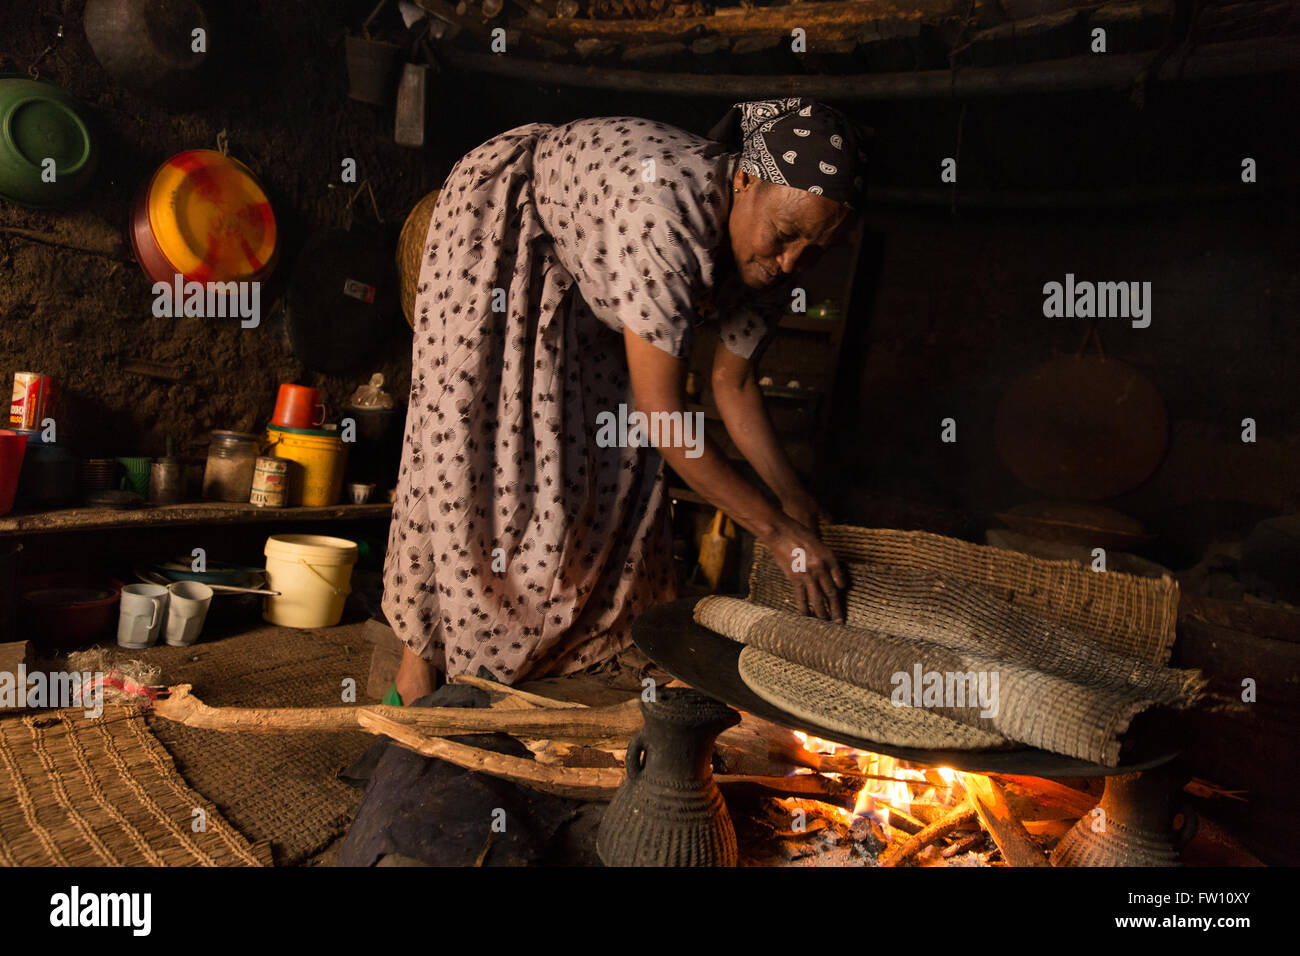 Gibi Gurage village, l'Éthiopie, octobre 2013 Maraganesh Waldemikel, 60, la préparation du pain fermenté de kocho enset tiges et racines. Banque D'Images